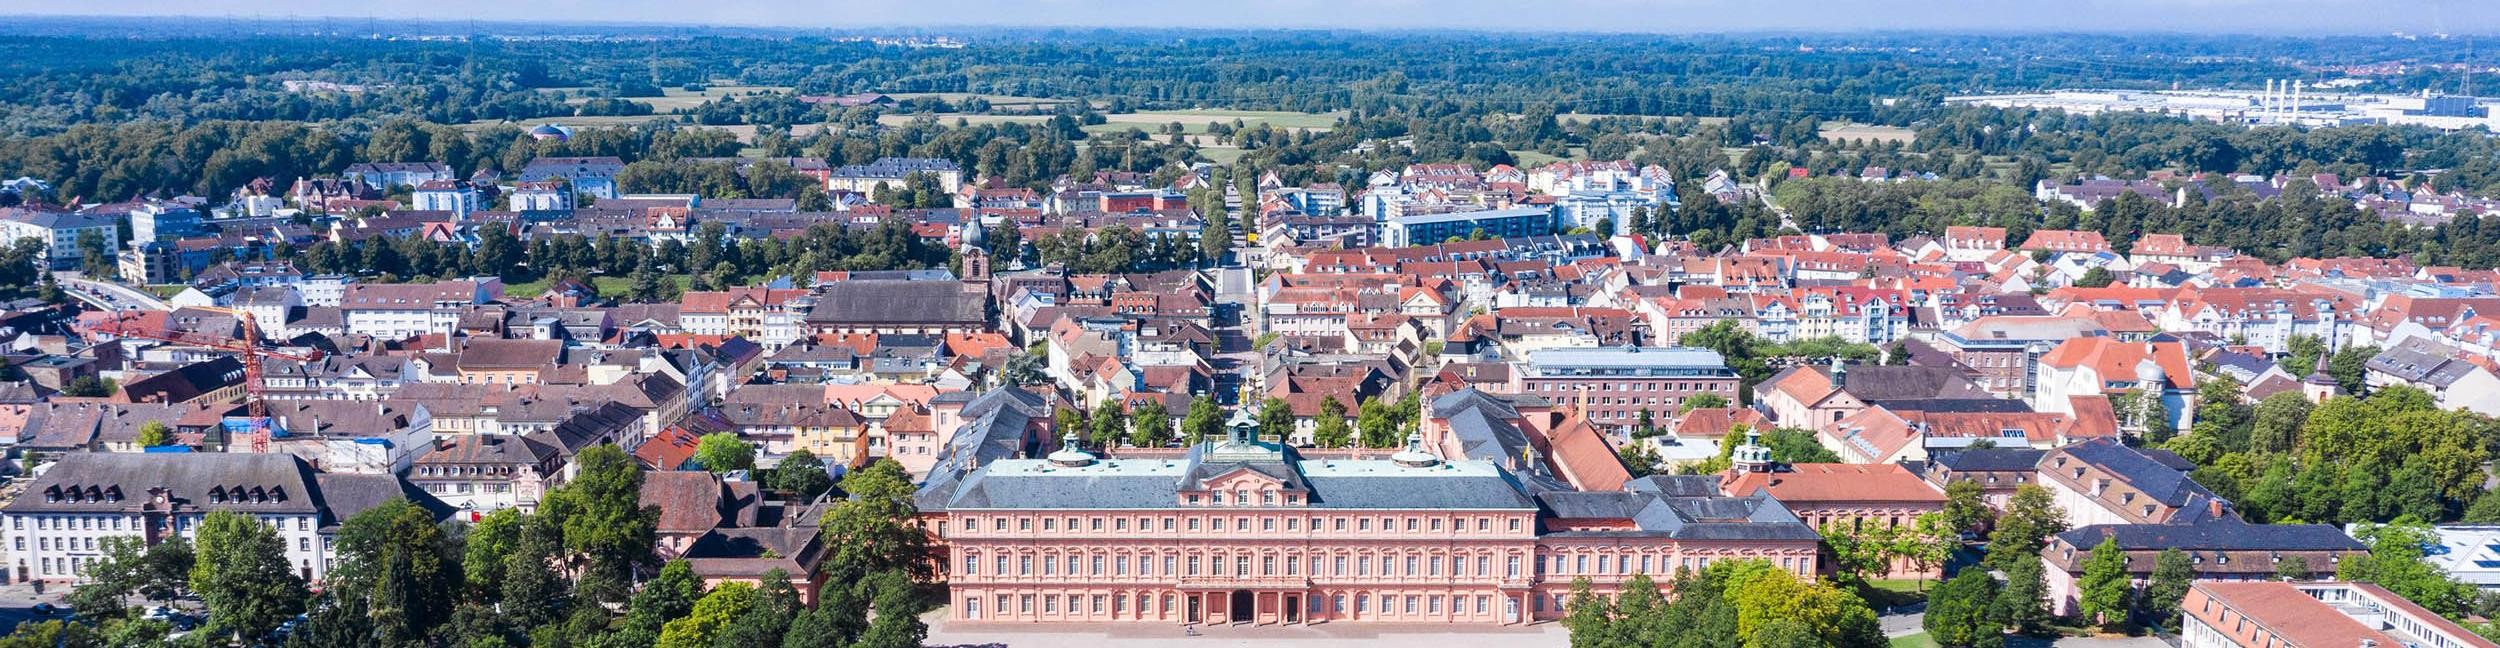 Aerial view of Rastatt Castle and Rastatt city center